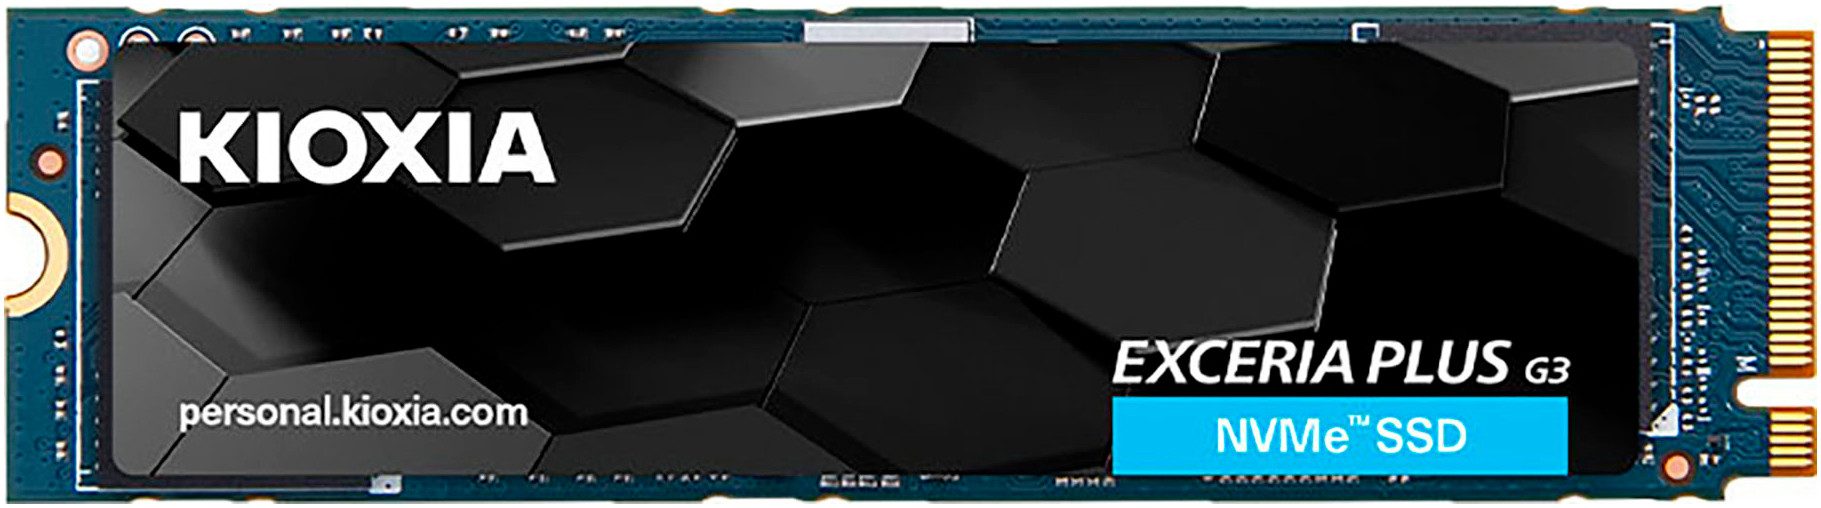 KIOXIA Exceria Plus G3 2TB interne SSD (2 TB) 5000 MB/S Lesegeschwindigkeit, 3900 MB/S Schreibgeschwindigkeit